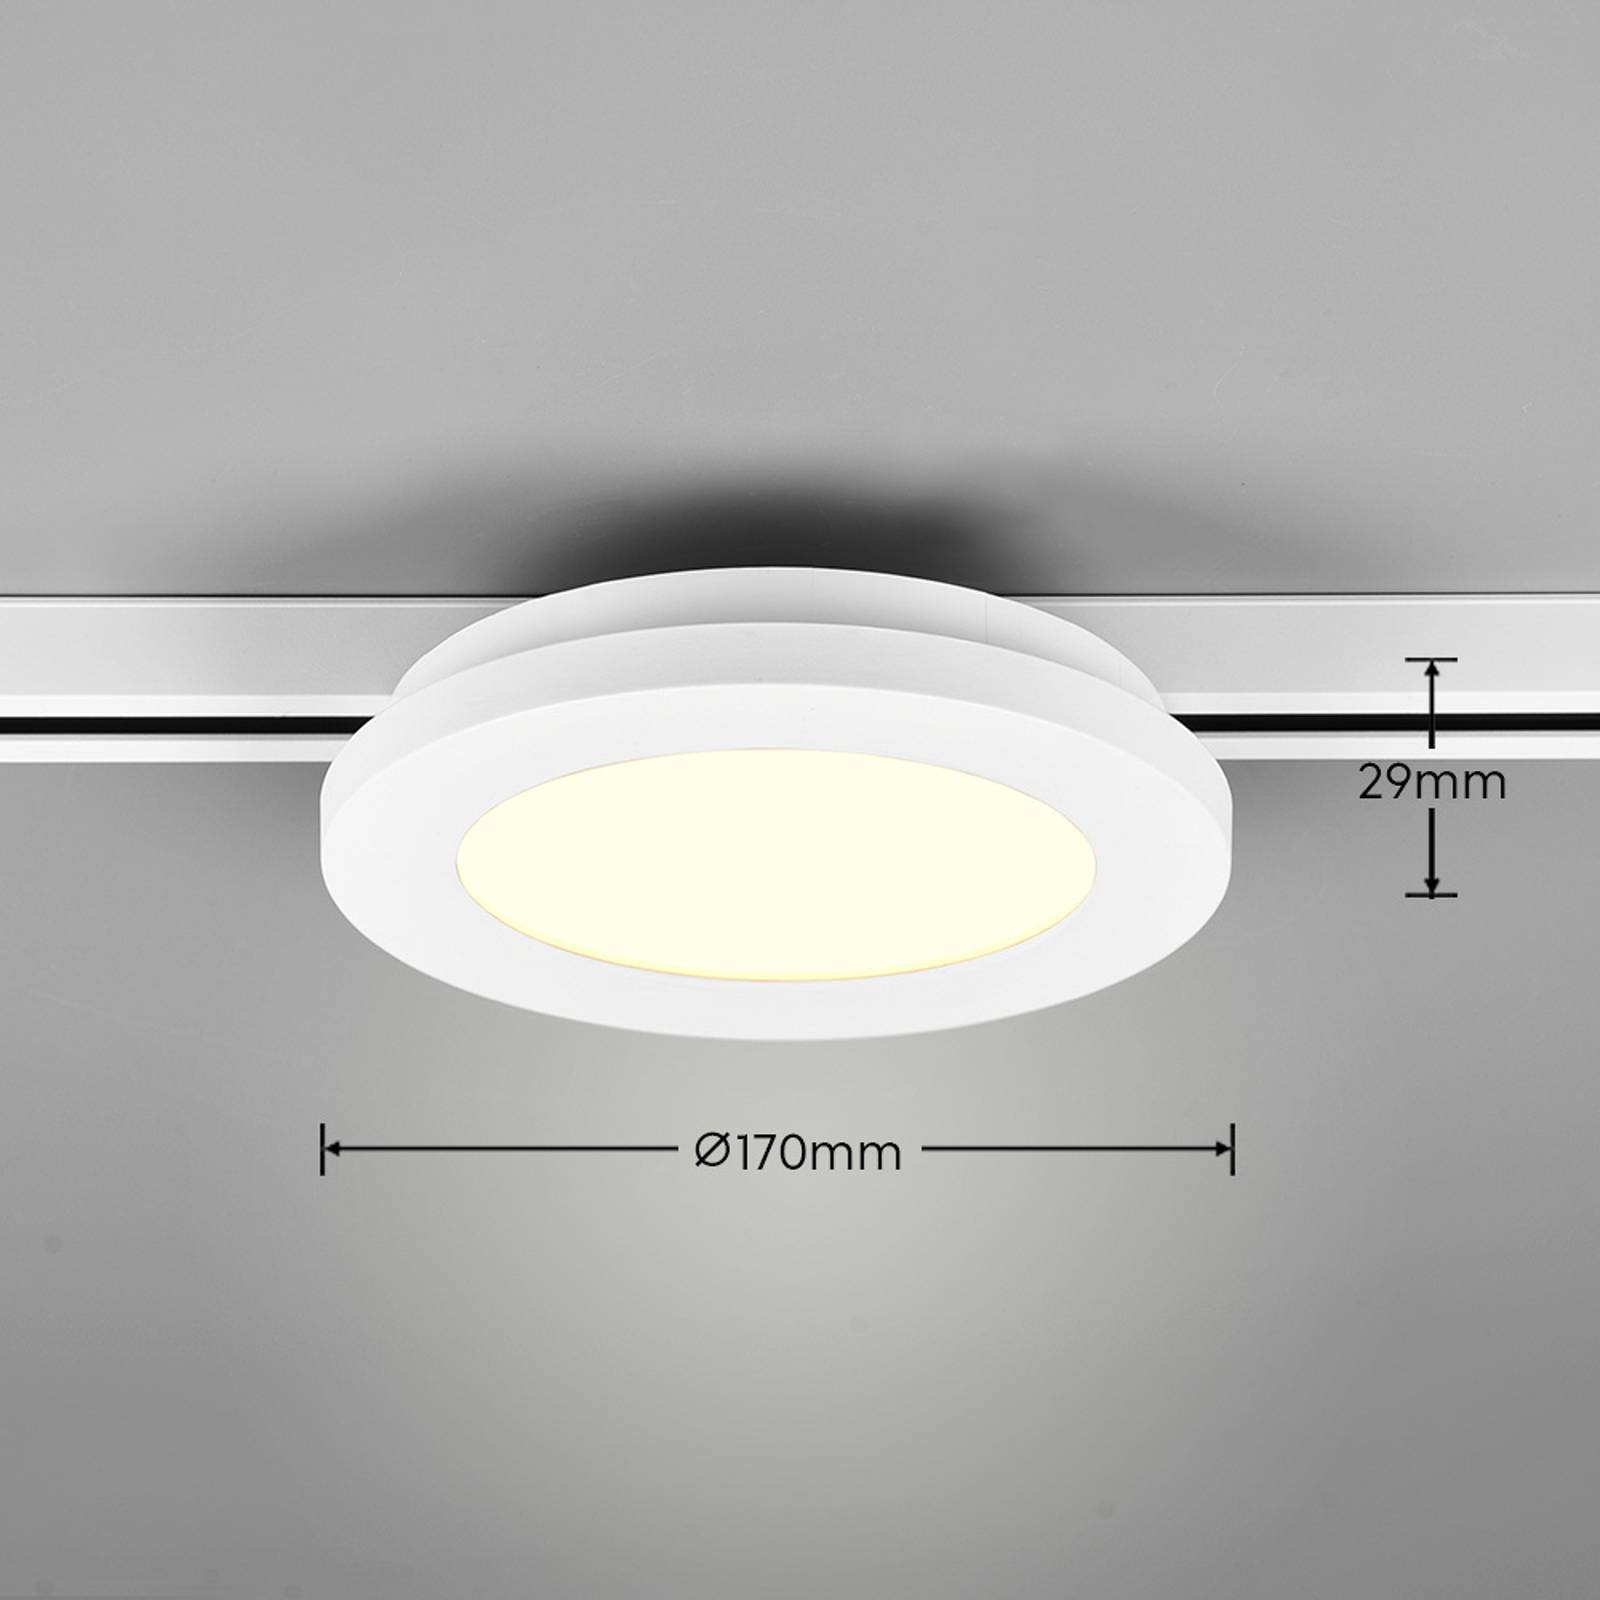 LED stropné svietidlo Camillus DUOline, Ø 17 cm, biele